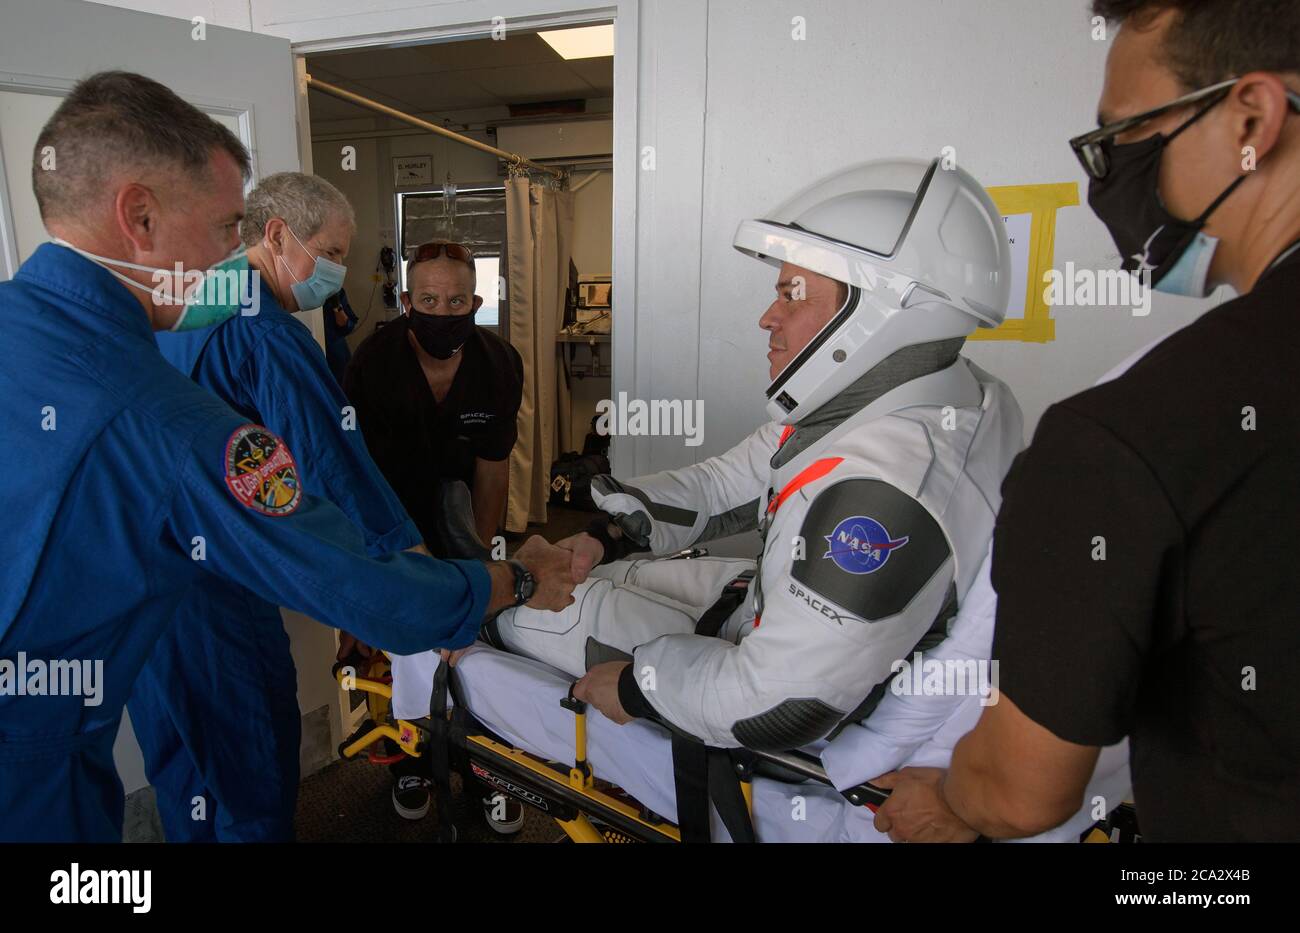 GOLFE DU MEXIQUE, États-Unis - 02 août 2020 - l'astronaute de la NASA Robert Behnken est accueilli par l'astronaute et chef de l'équipage de la NASA, Shane Kimbrough, après son évacuation Banque D'Images